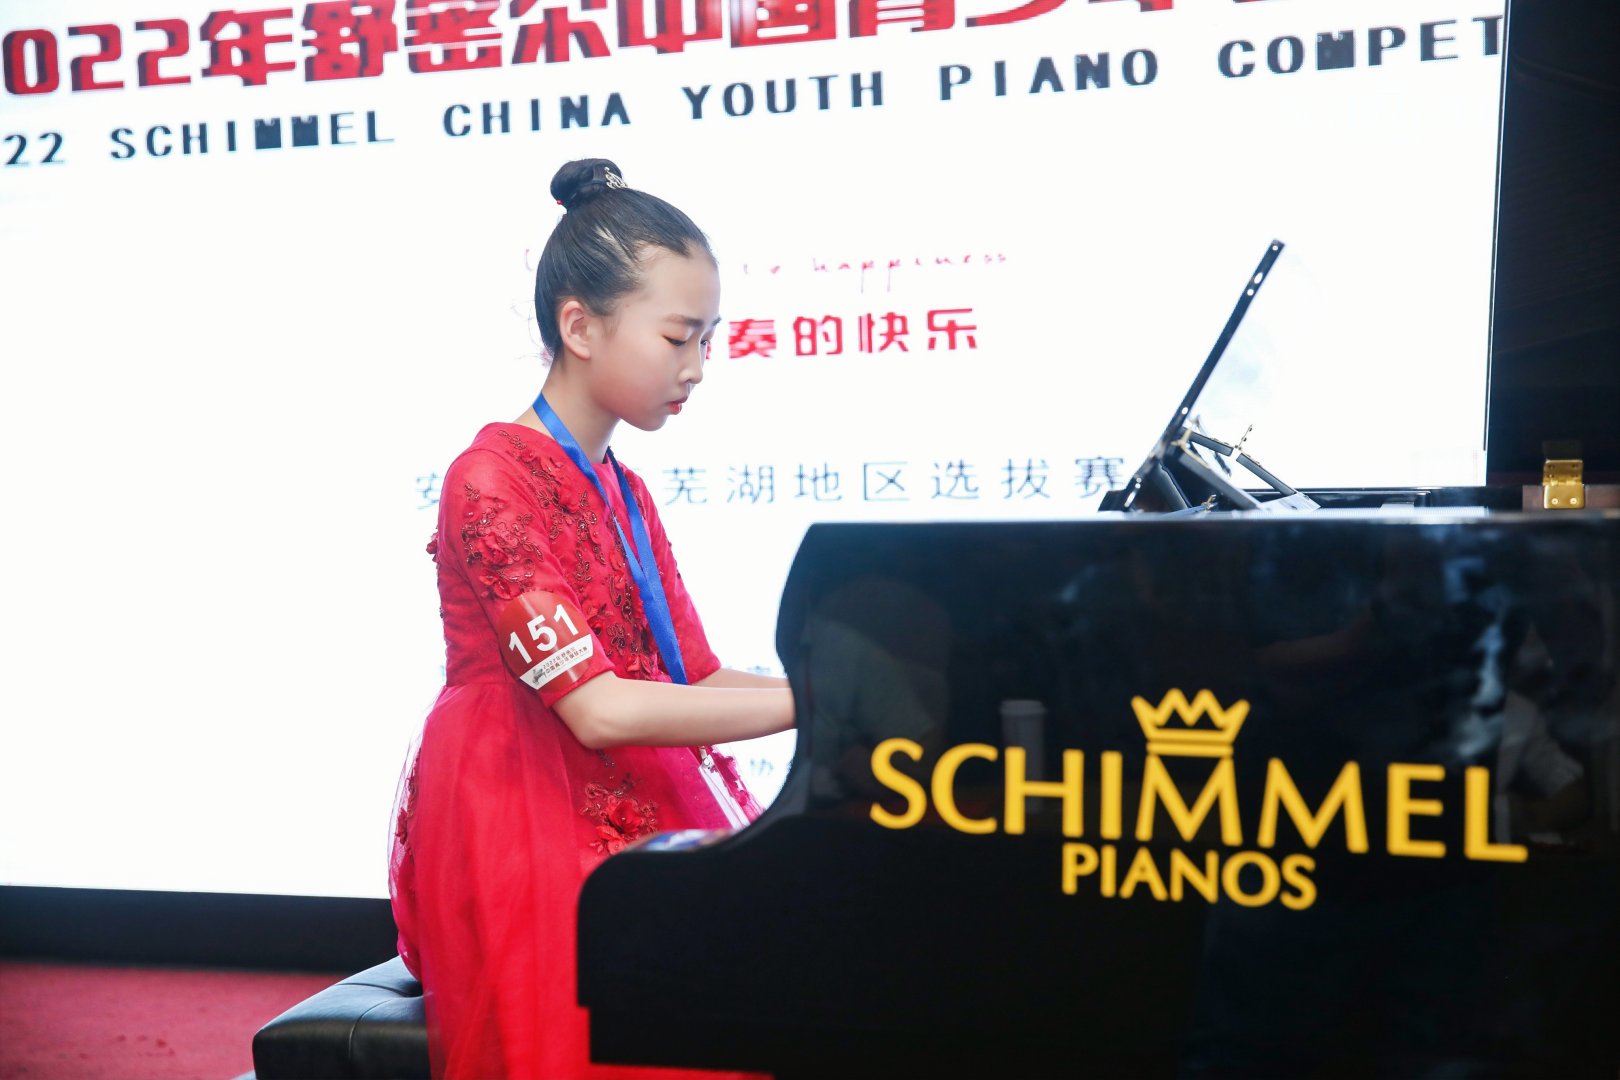 舒密尔钢琴赛事资讯 | 芜湖、南京、泰州、威海、济南、文山、嘉兴、南宁、盘锦、赣州选拔赛璀璨开赛